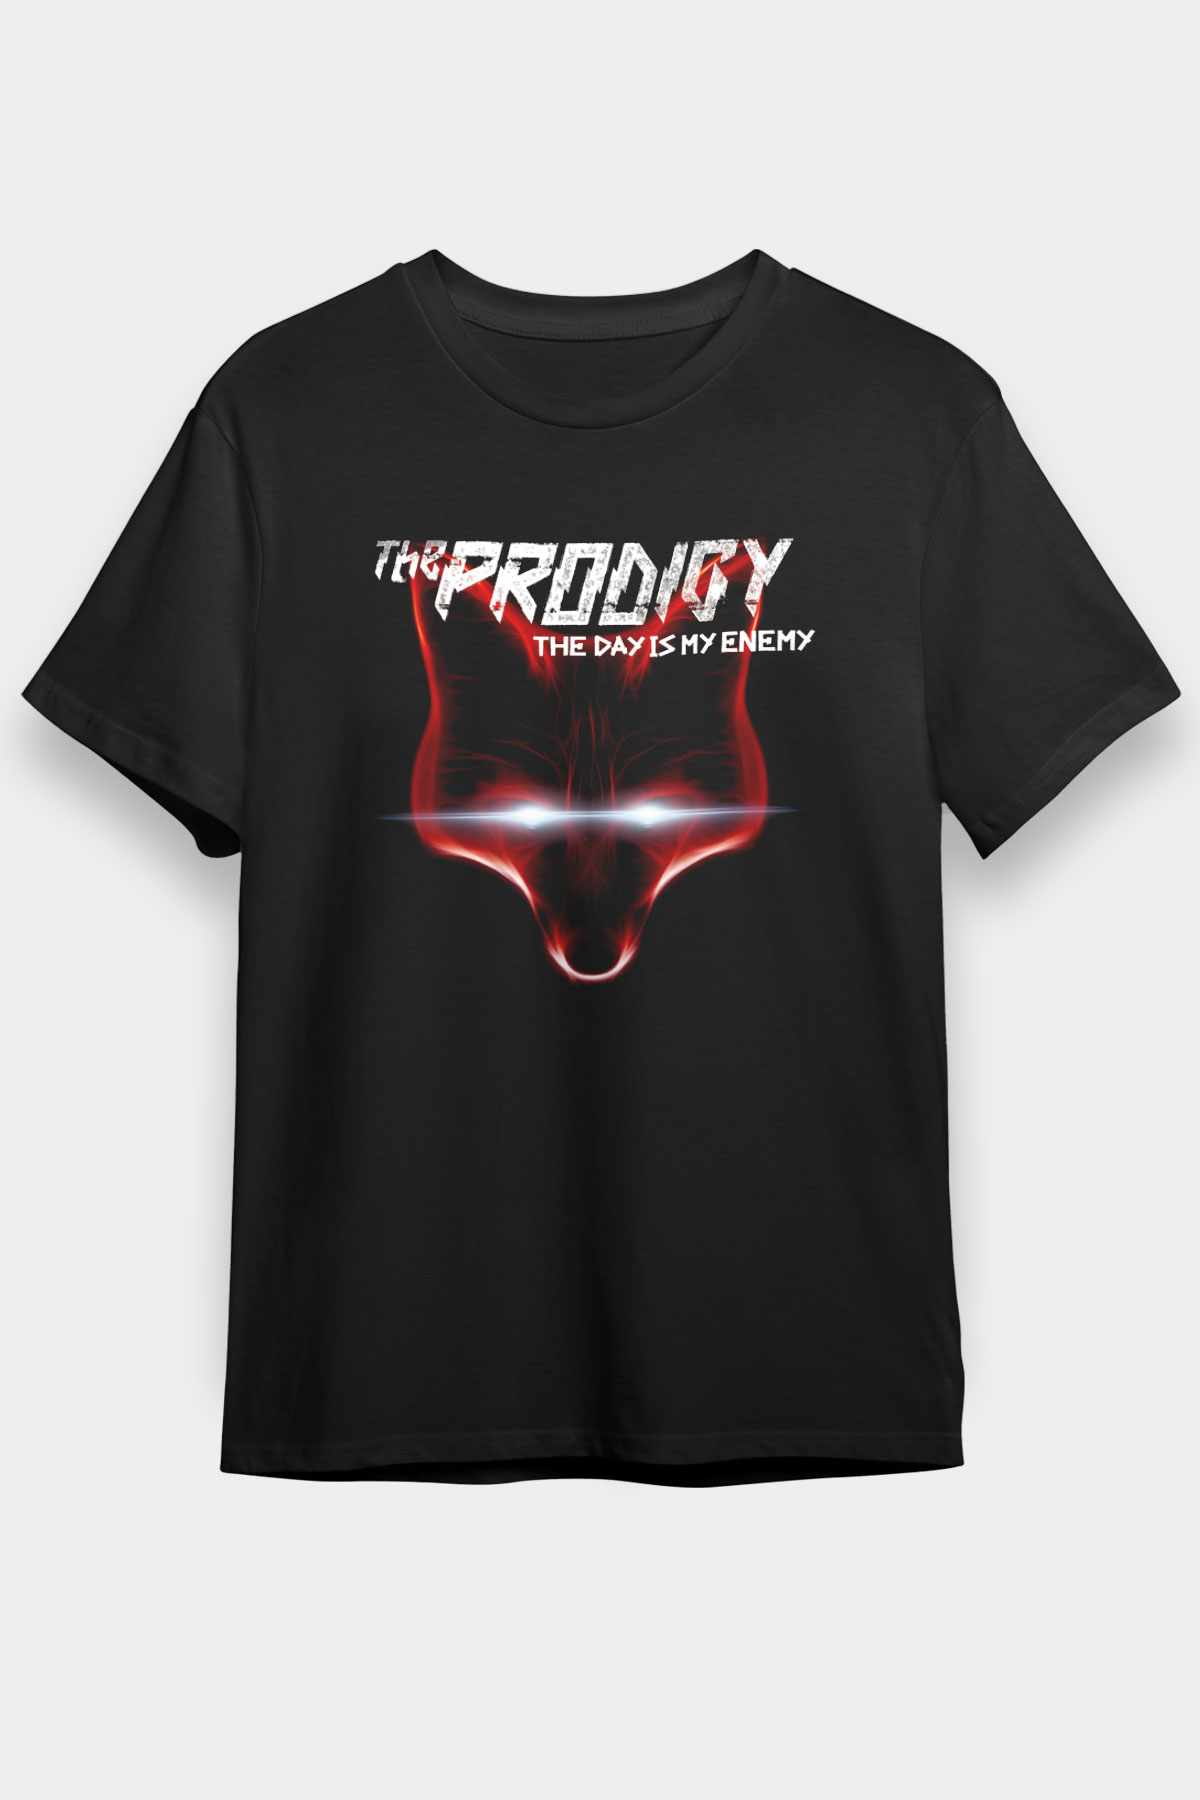 The Prodigy Black Unisex T-Shirt - Tees - Shirts